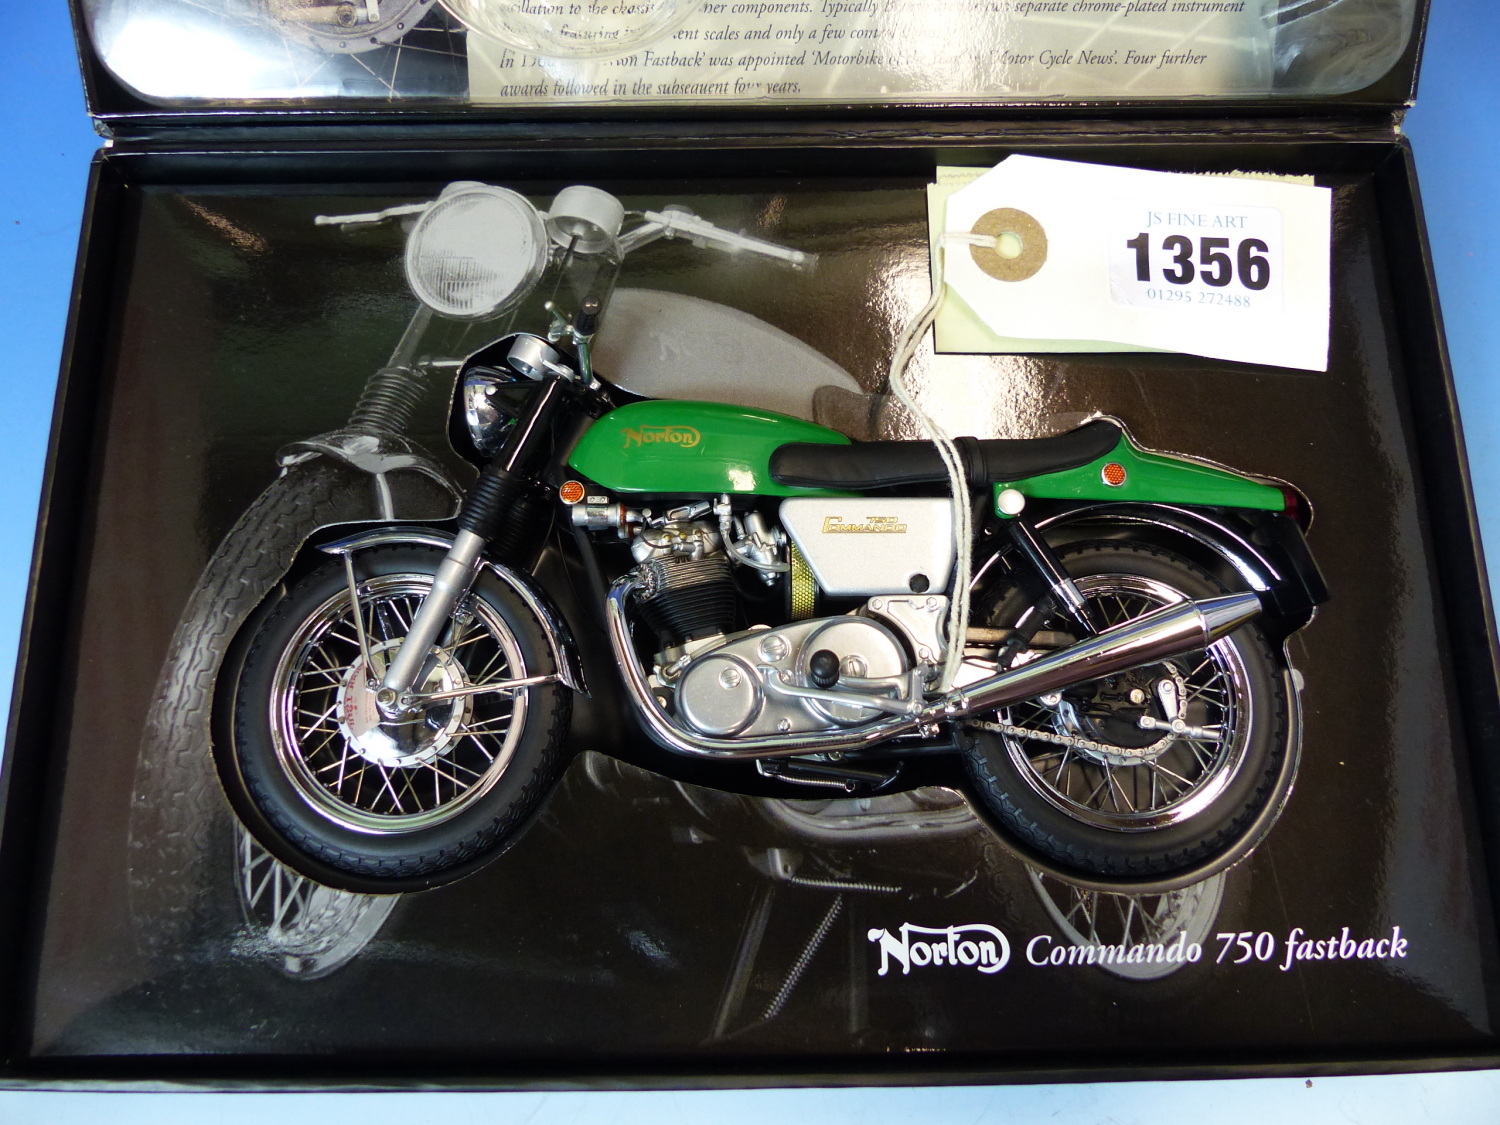 A MINICHAMPS SCALE MODEL OF A NORTON COMMANDO 750 FASTBACK MOTORBIKE IN ITS ORIGINAL BOX, THE BOX. W - Image 4 of 6